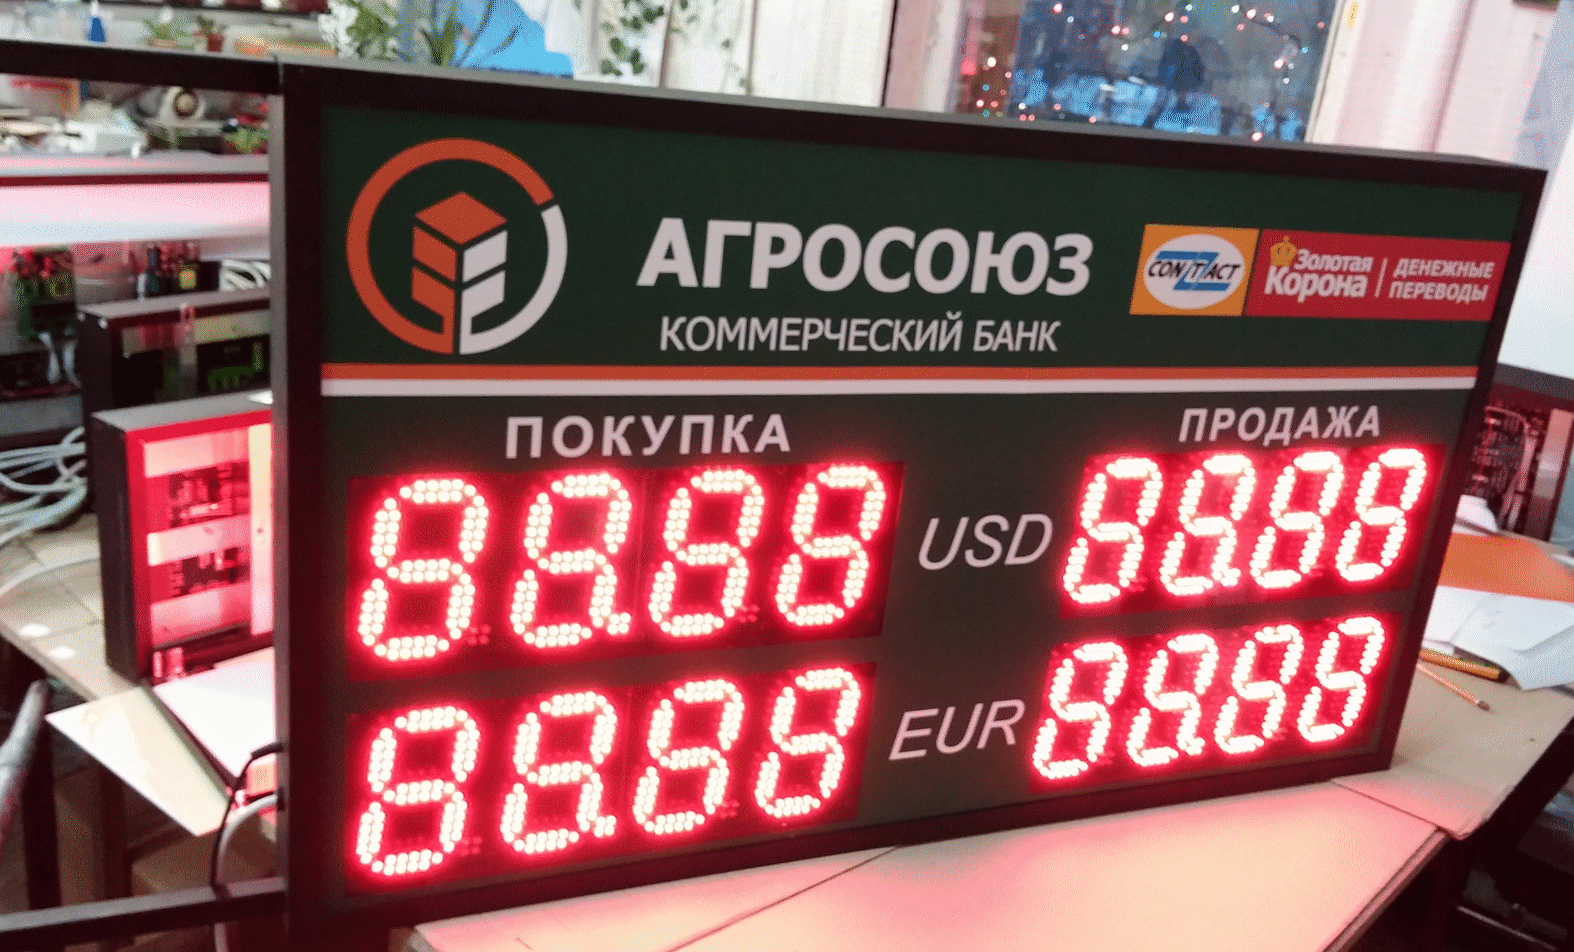 Табло обмена валют АГРОСОЮЗ коммерческий банк